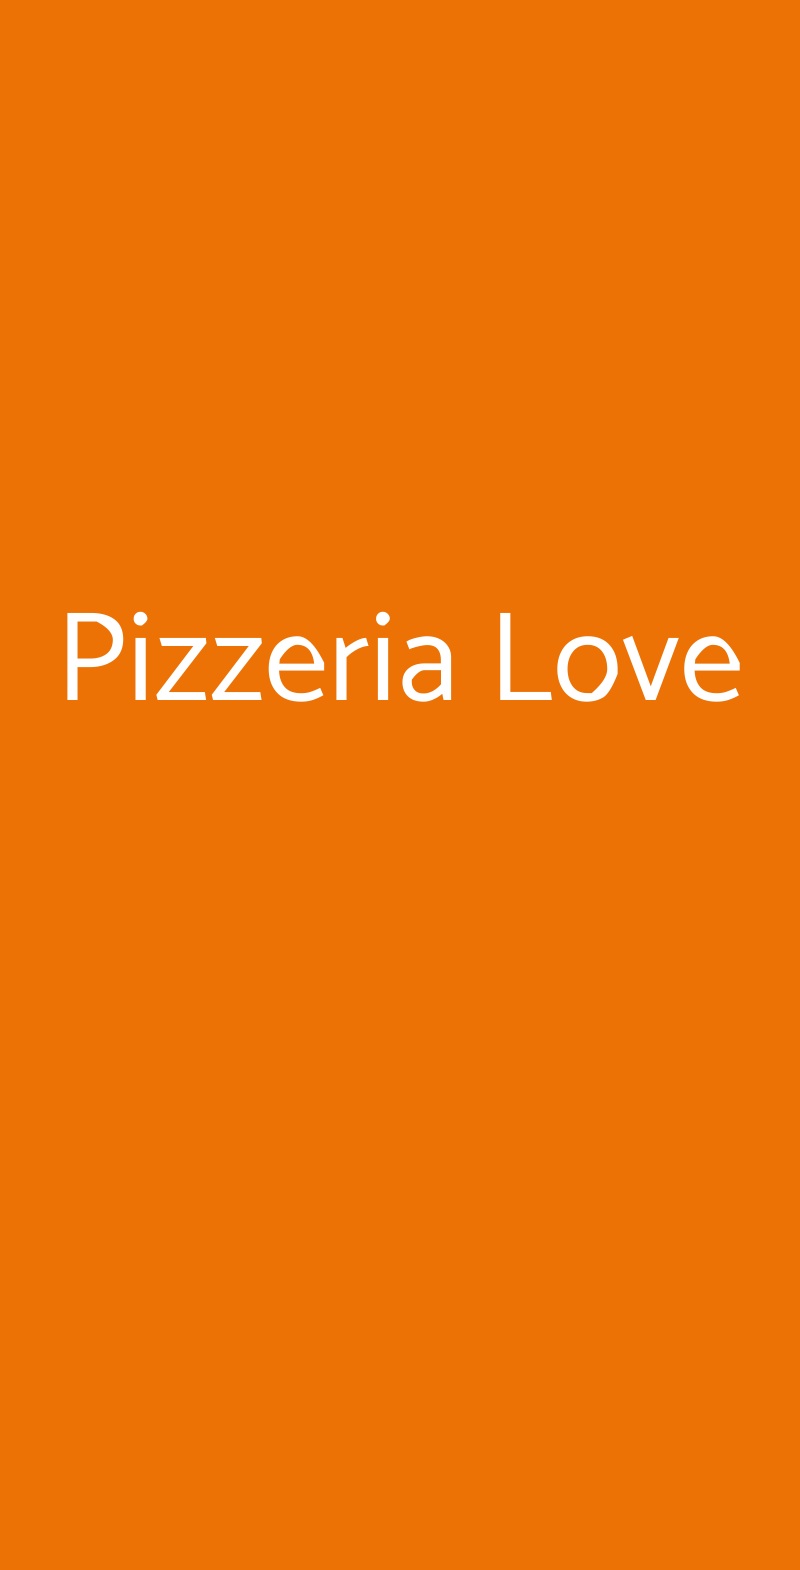 Pizzeria Love Fiumicino menù 1 pagina